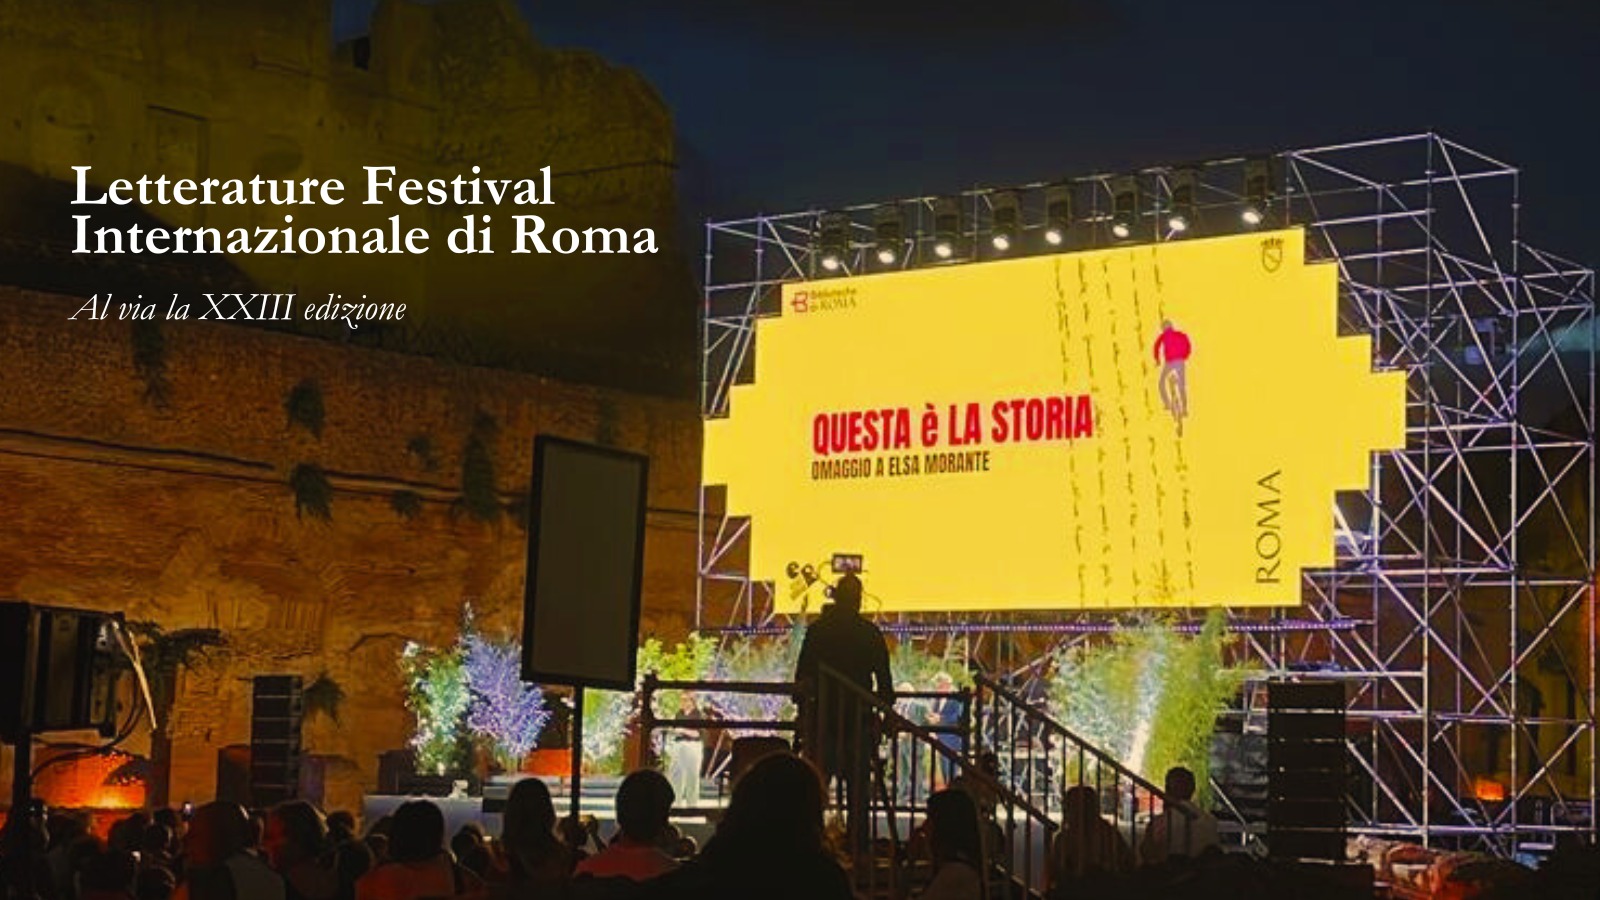 Letterature Festival Internazionale di Roma: al via la XXIII edizione